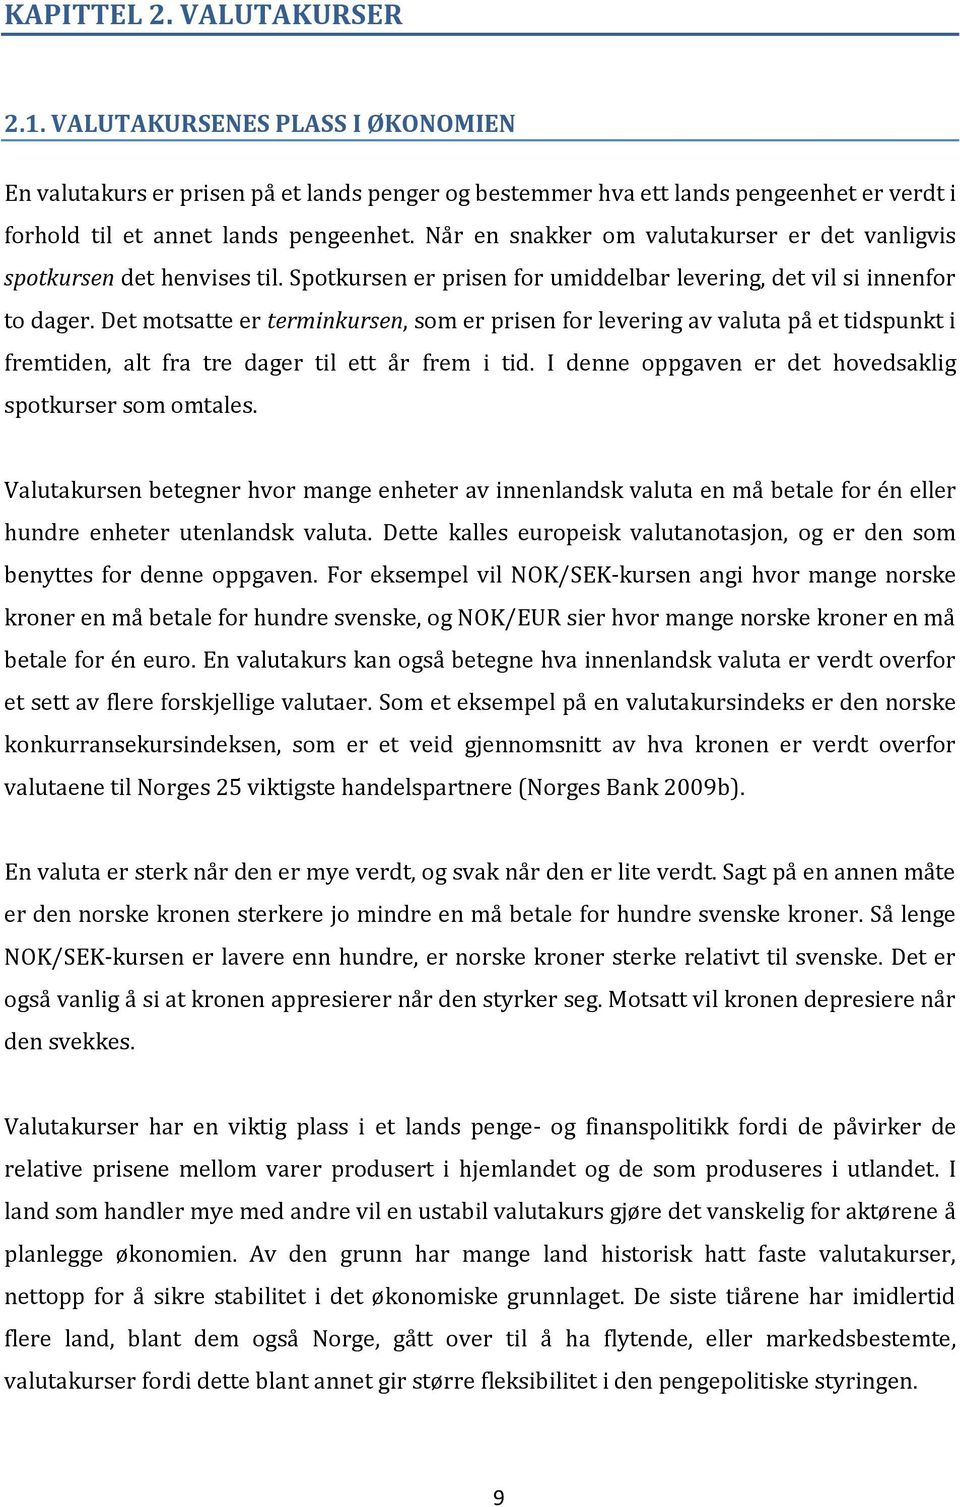 VALUTAKURSMODELLERING AV DEN NORSKE KRONEN. - en undersøkelse av  informasjonsinnholdet i NOK/SEK-kursen. ELLEN AAMODT - PDF Free Download